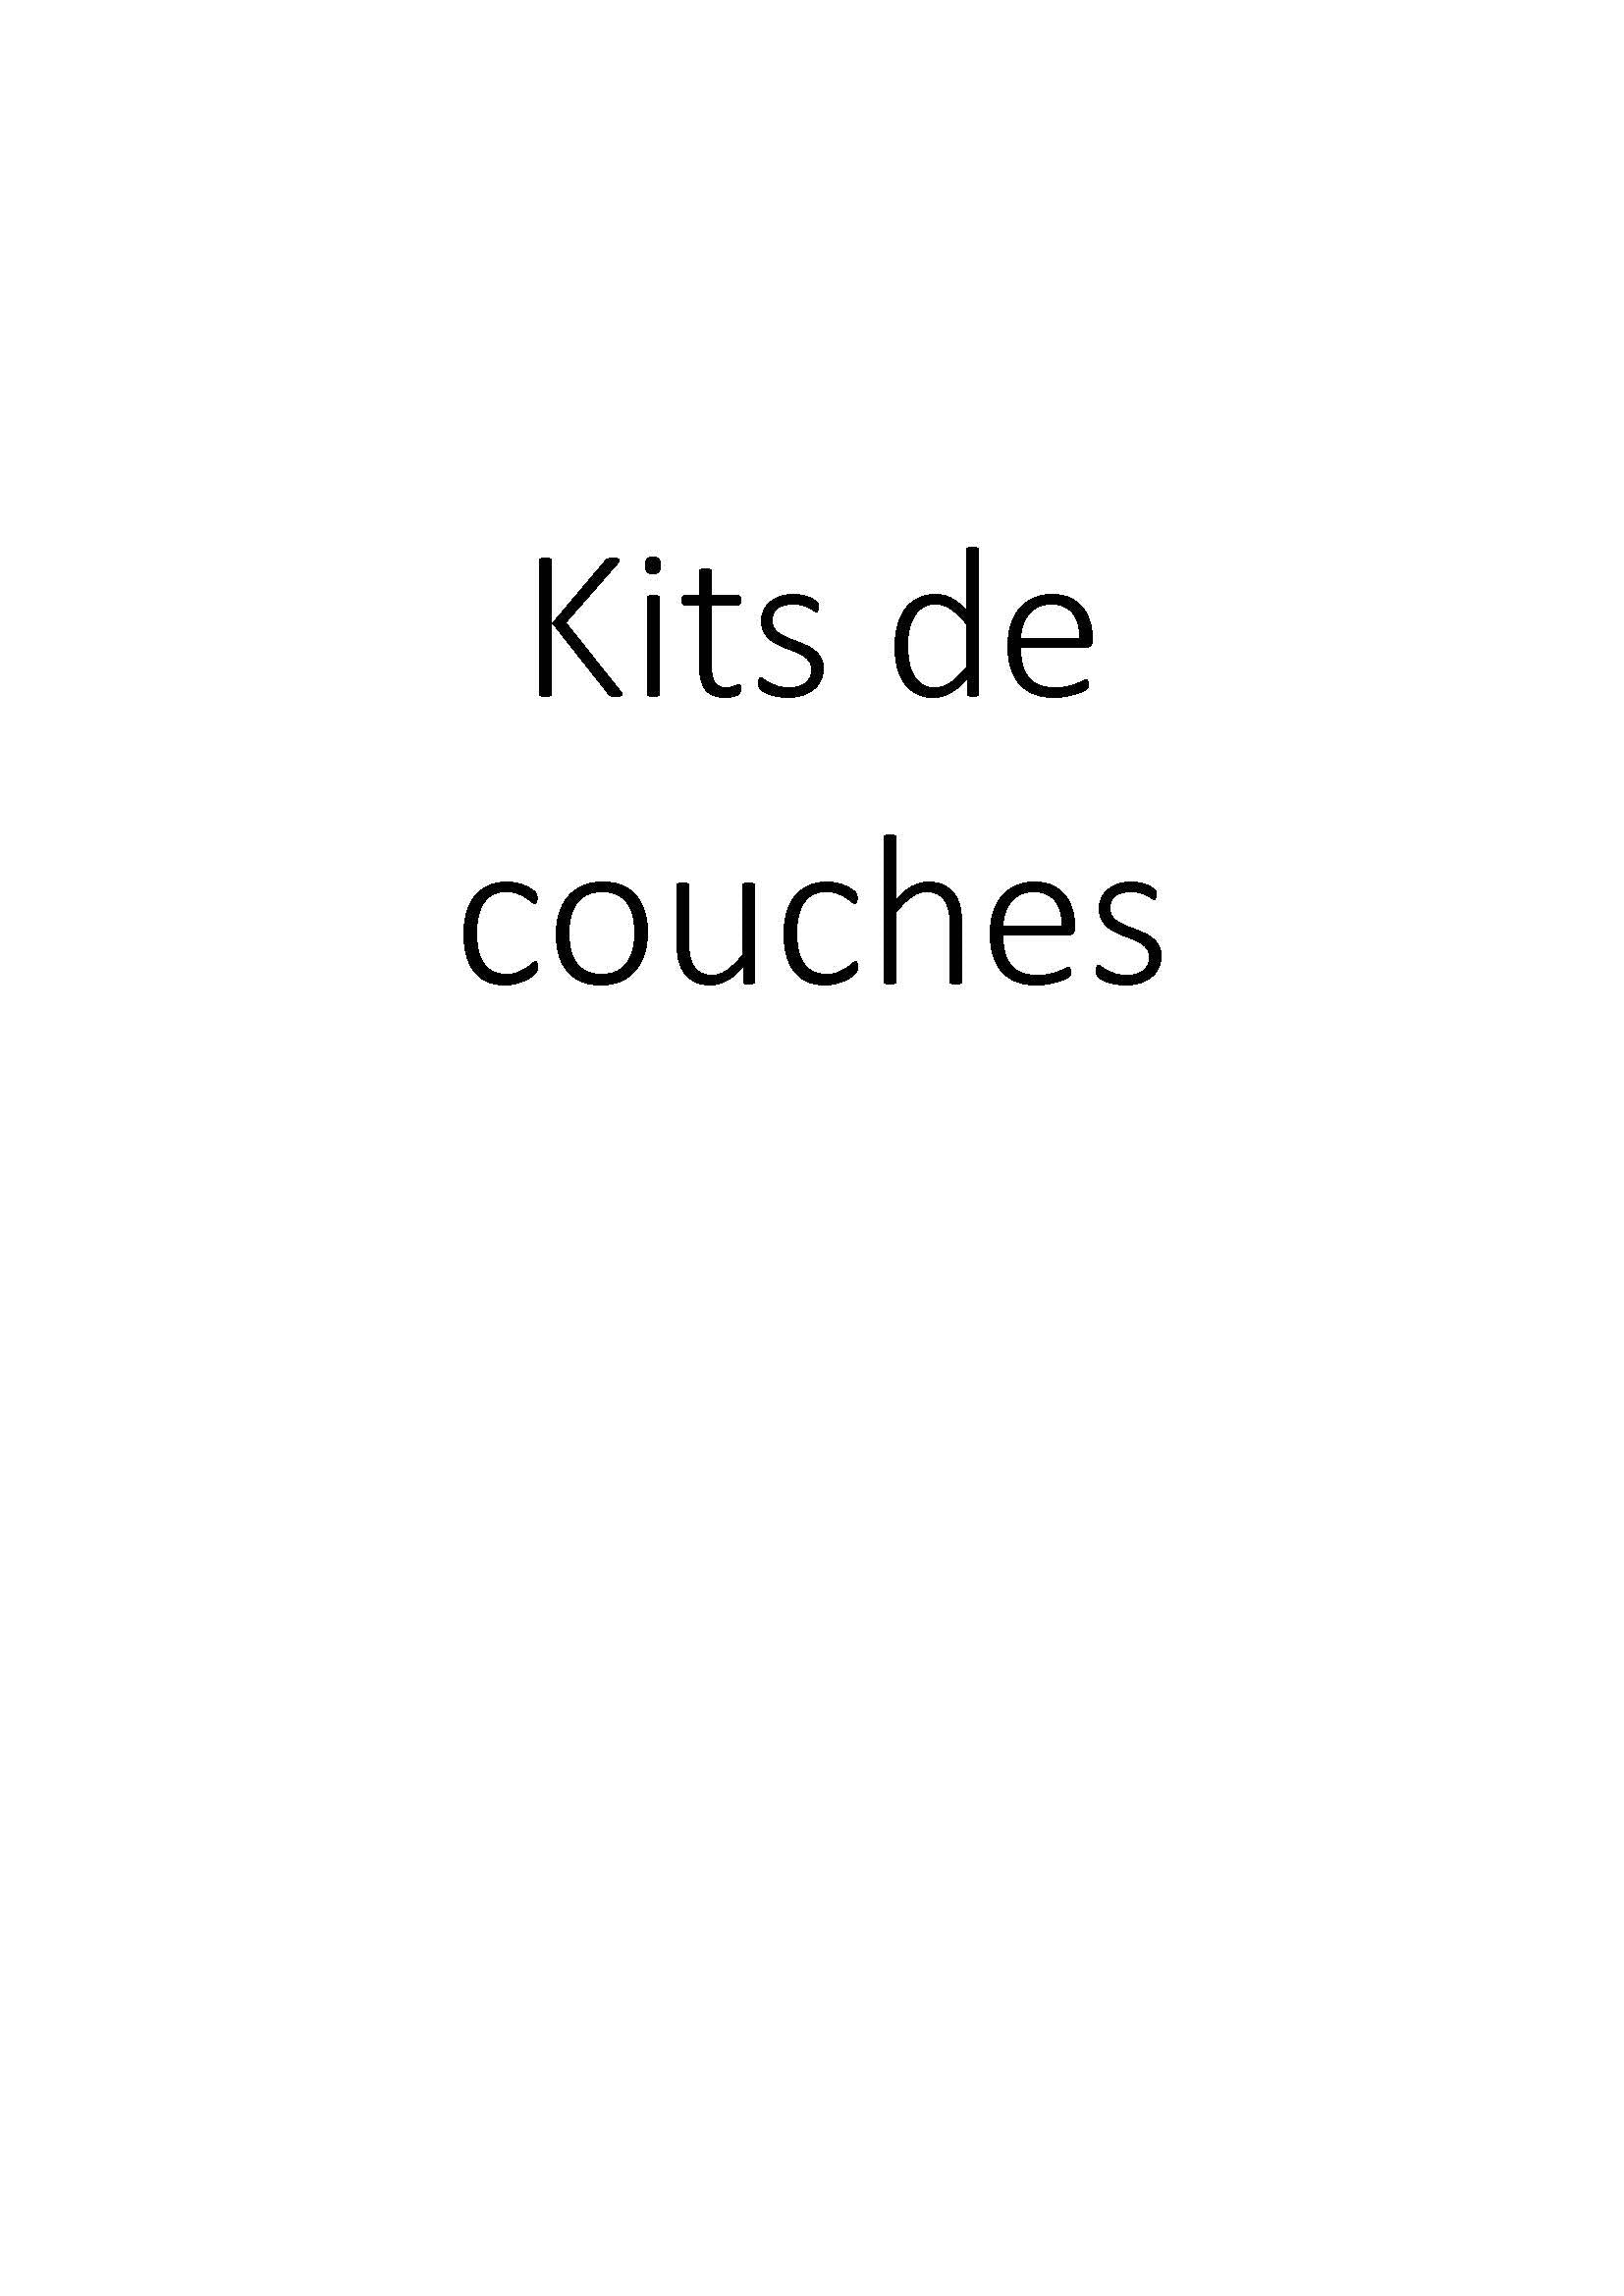 Kits de couches clicktofournisseur.com